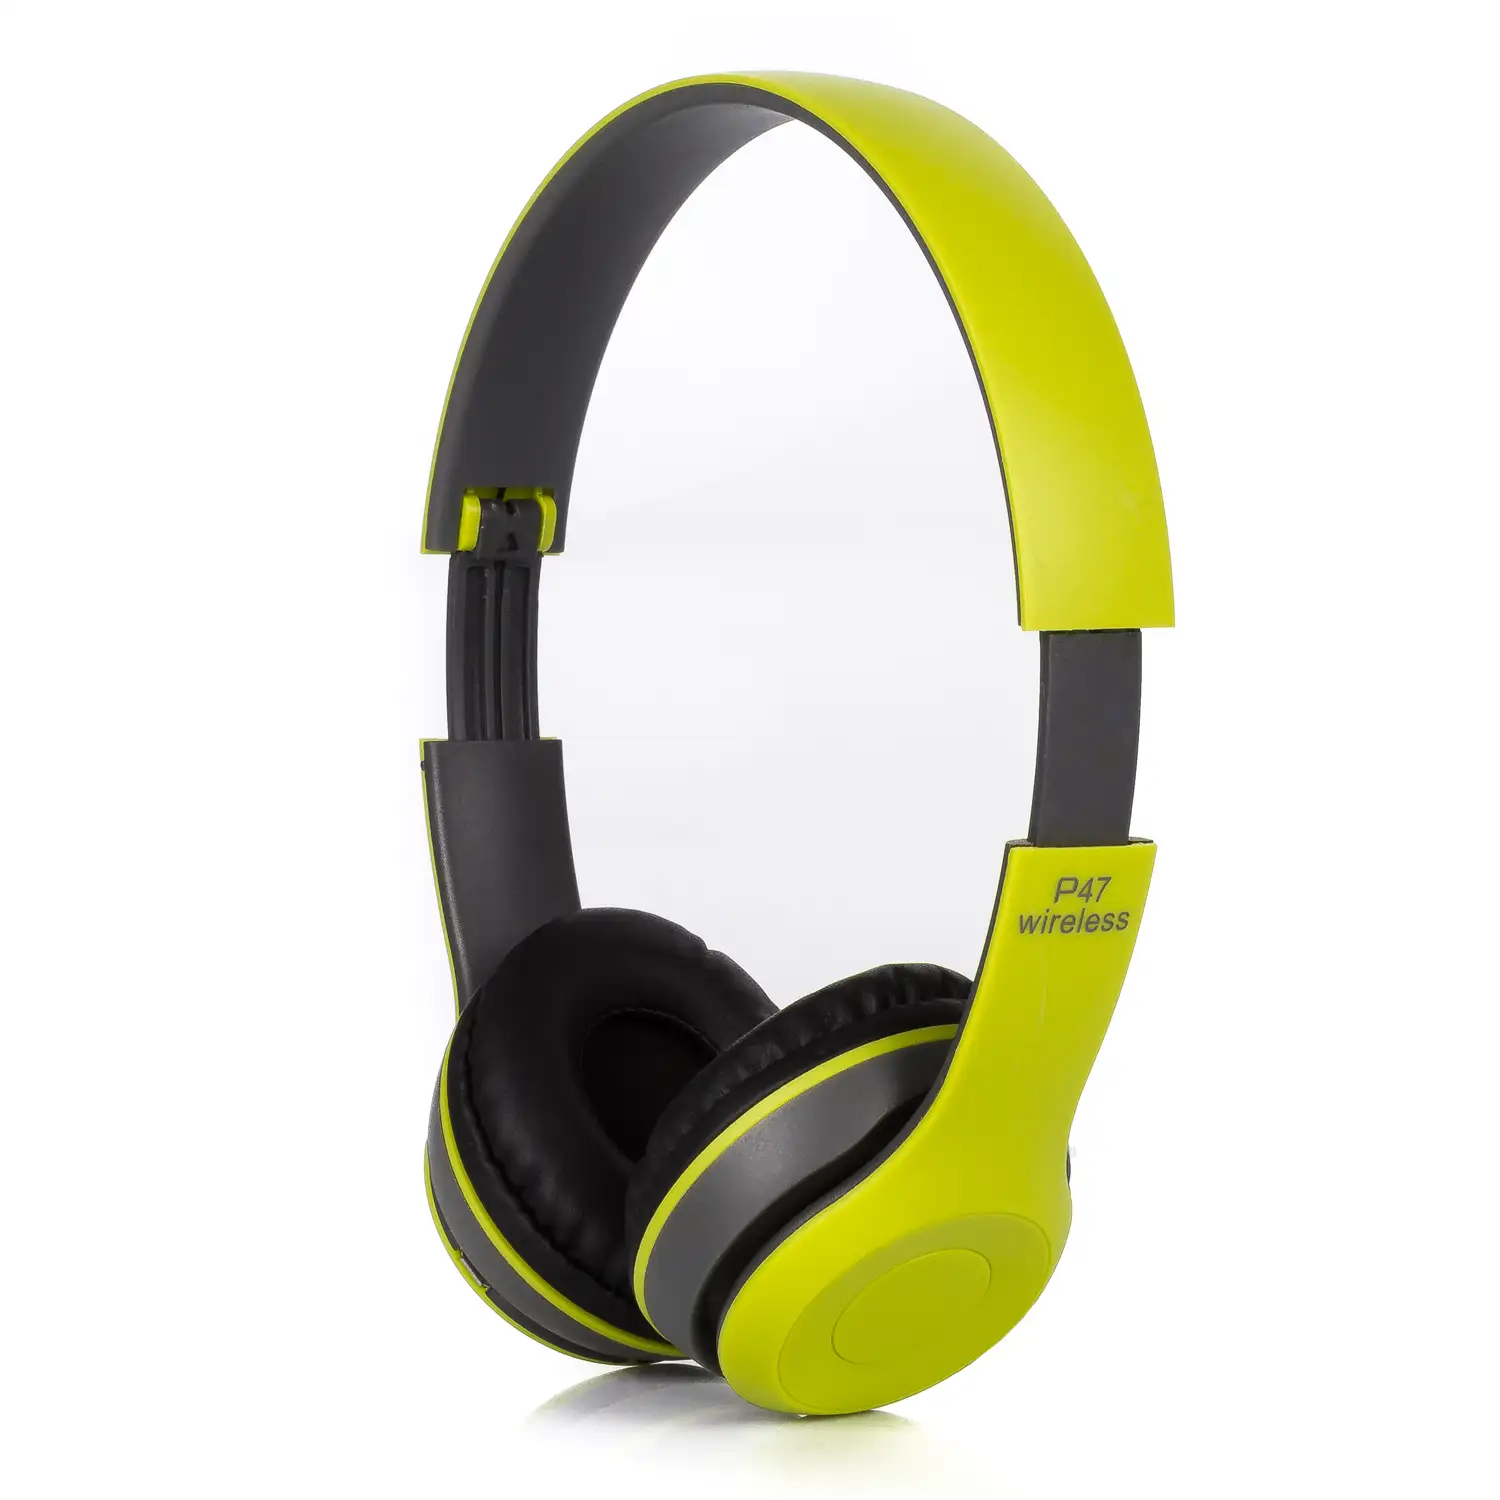 Cascos auriculares P47 Bluetooth 5.0 +EDR con radio FM incorporada y lector de Micro SD.